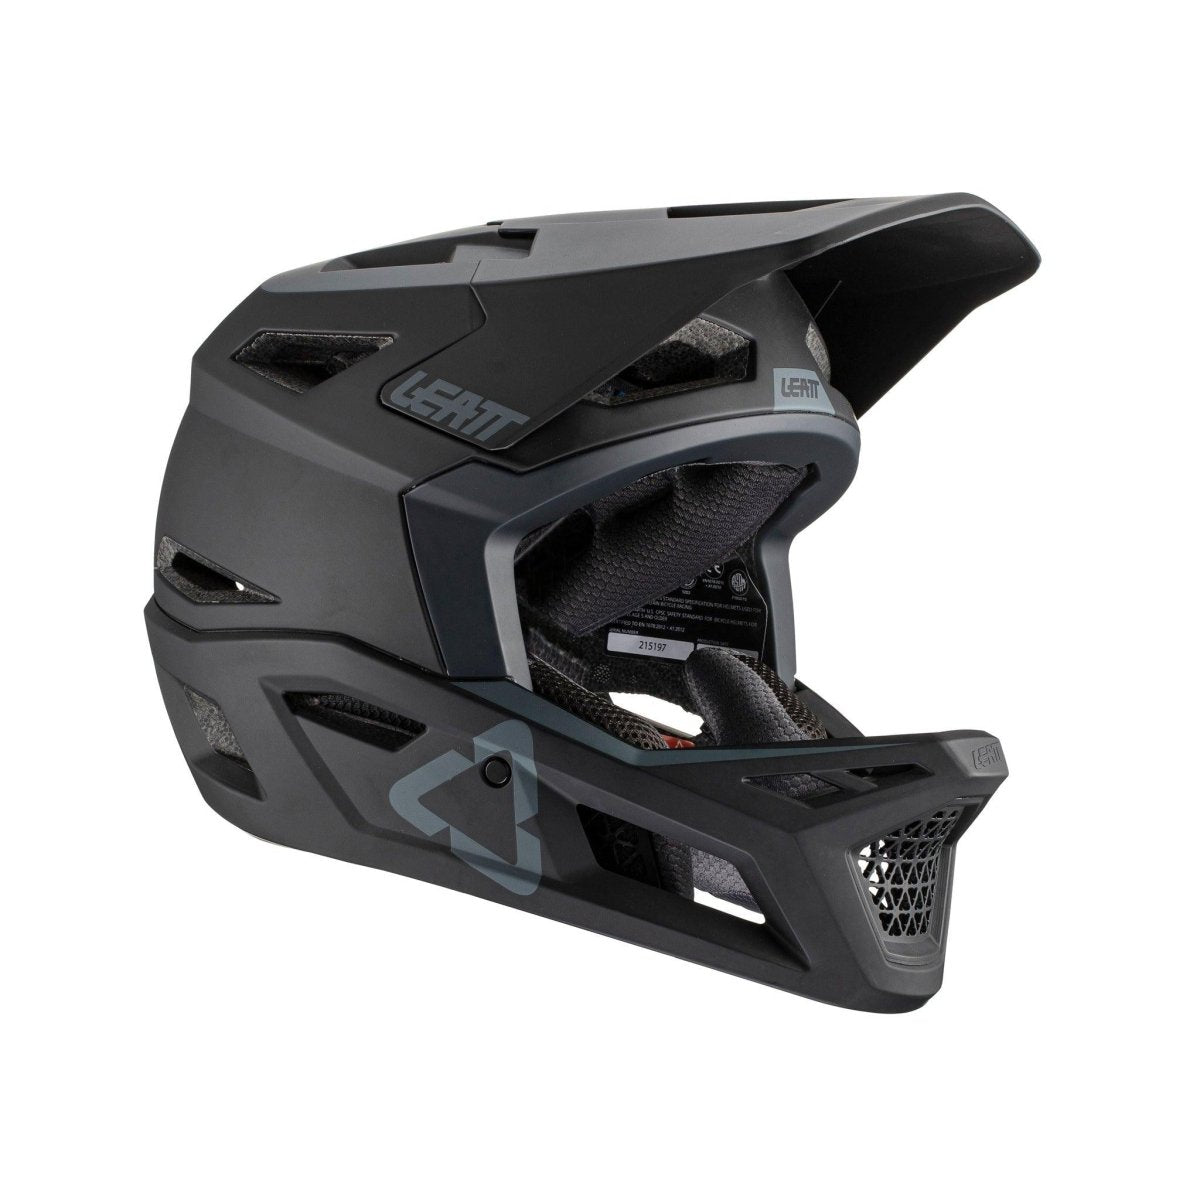 Leatt MTB 4.0 Enduro Helmet, Large (59-60cm), Black - Alaska Bicycle Center